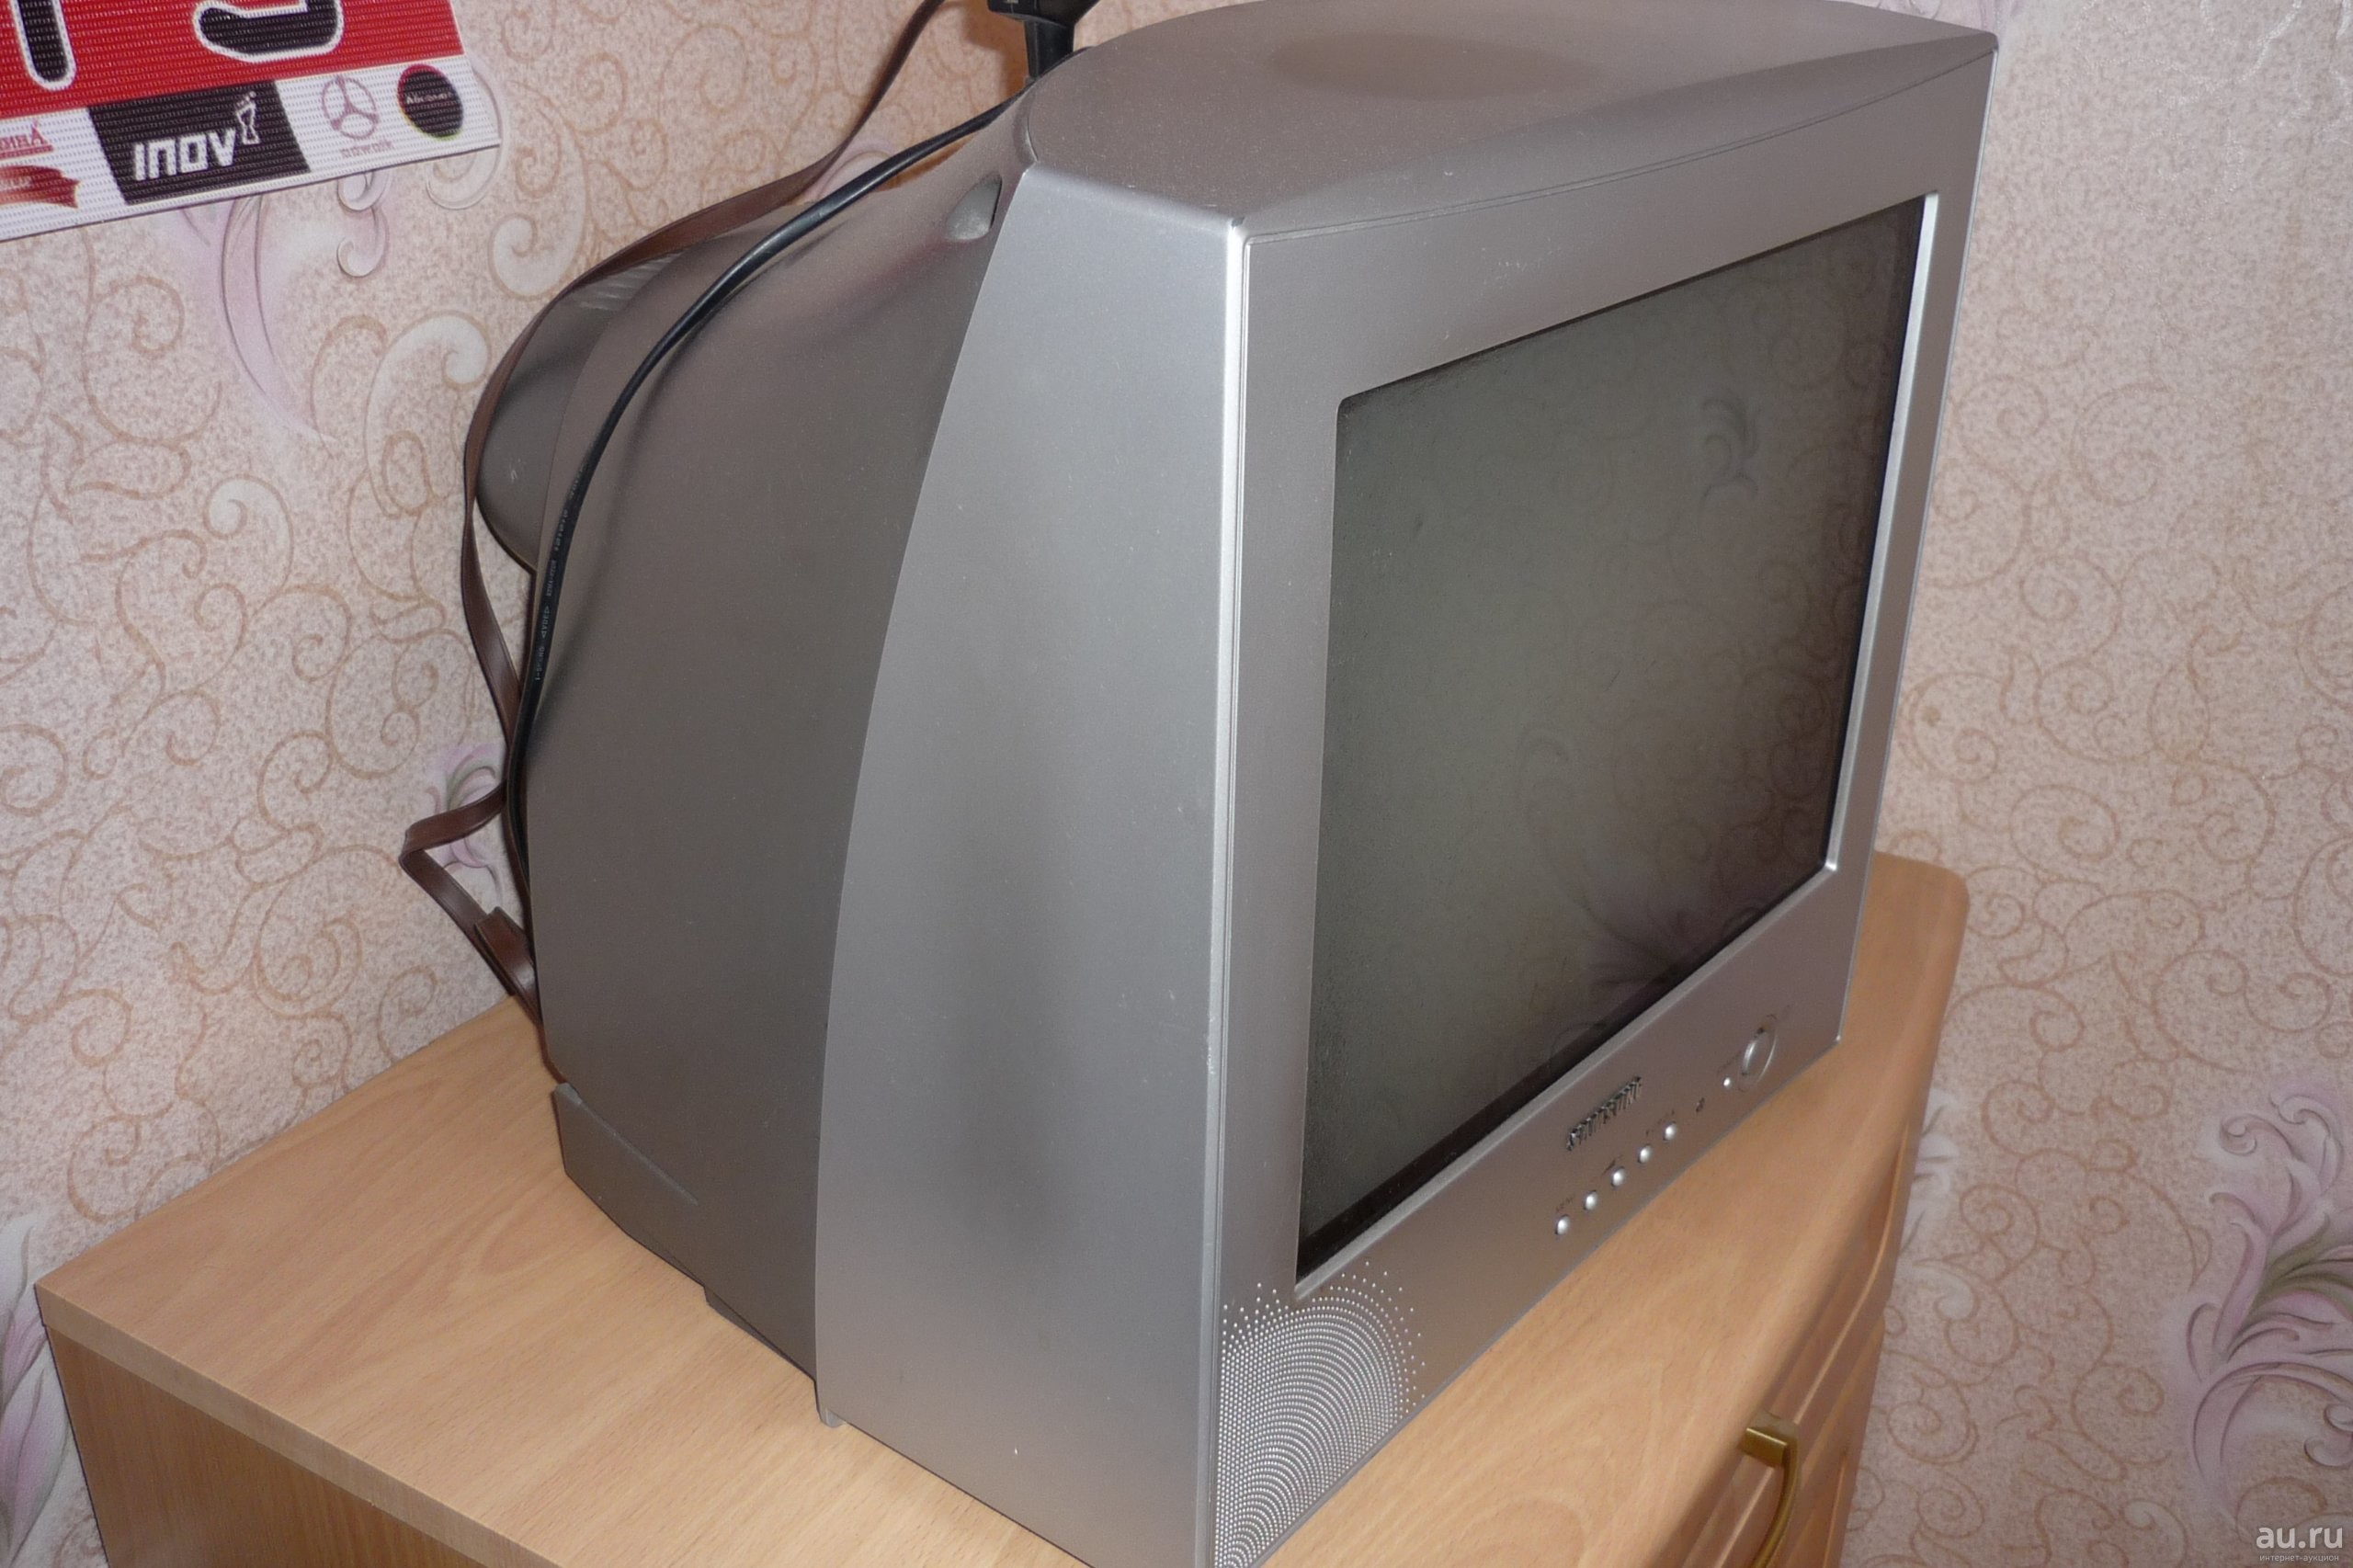 Телевизоры авито купить ростов. Телевизор самсунг старый кинескопный. Samsung 21 дюйм кинескопный. Телевизор Sharp ЭЛТ 21 дюйм. ЭЛТ телевизор Sharp 21 дюймов.